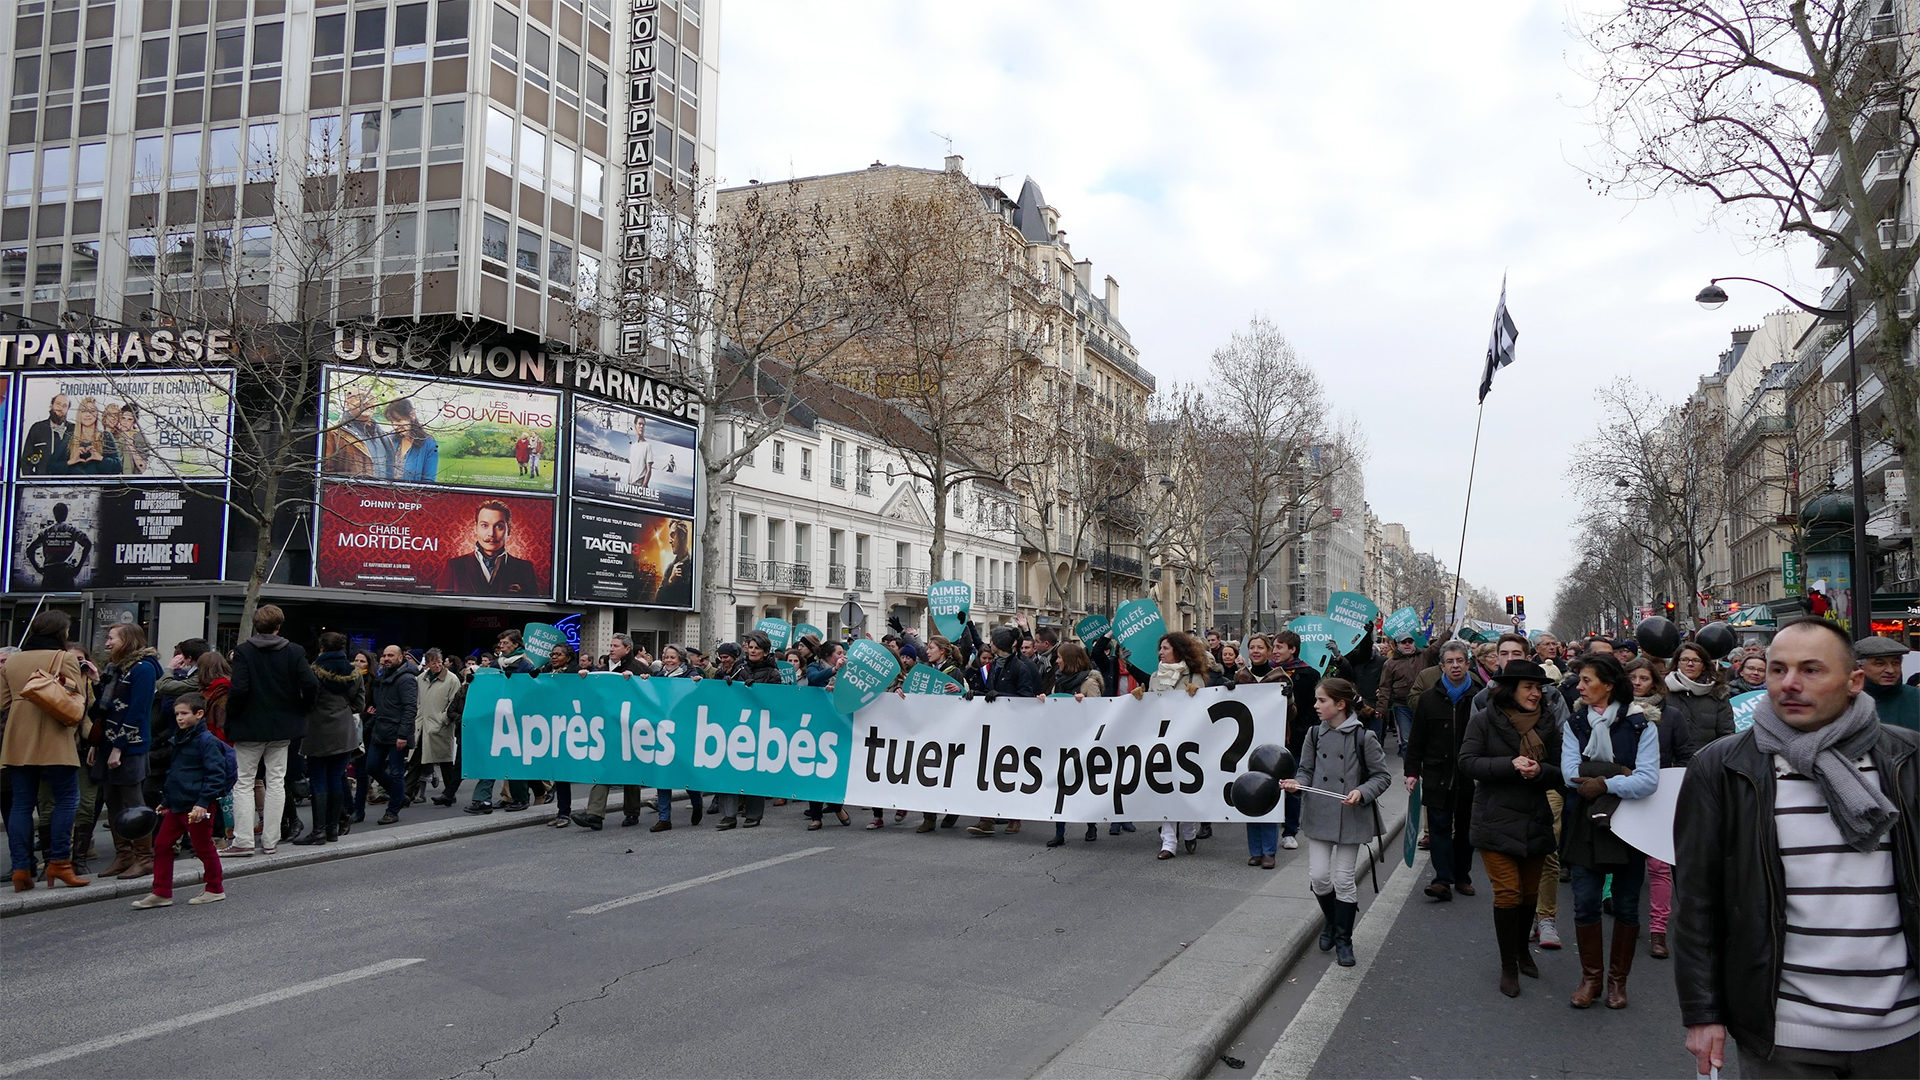 La "Marche pour la Vie", le 25 janvier 2015 à Paris (Photo: Peter Potrowl/CC BY-SA 4.0)